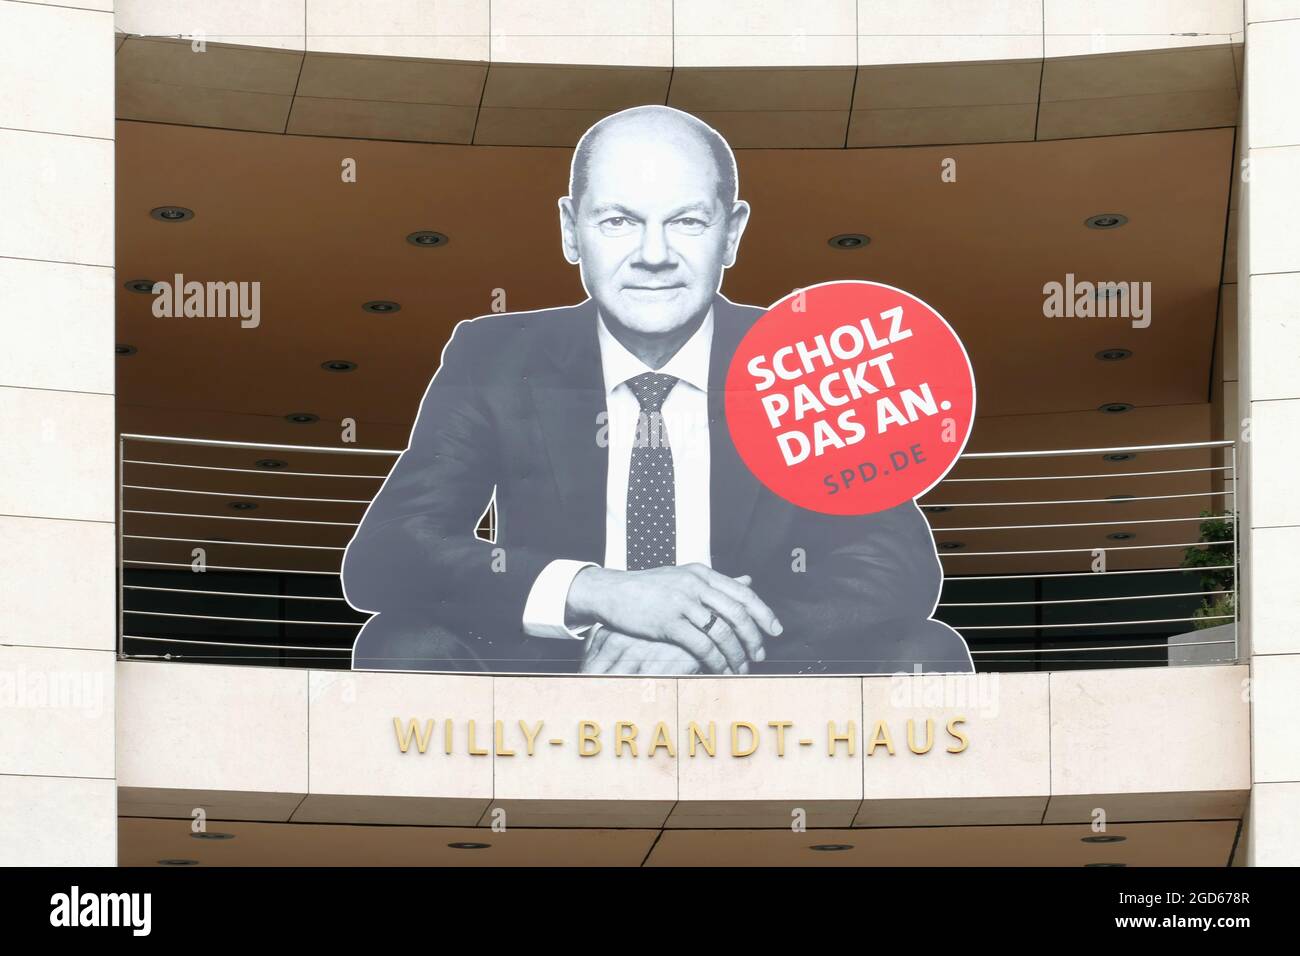 Berlin, 7. August 2021, Wahlkampfplakat im Willy-Brandt-Haus, mit dem Slogan: „Scholz greift das an“ Stockfoto